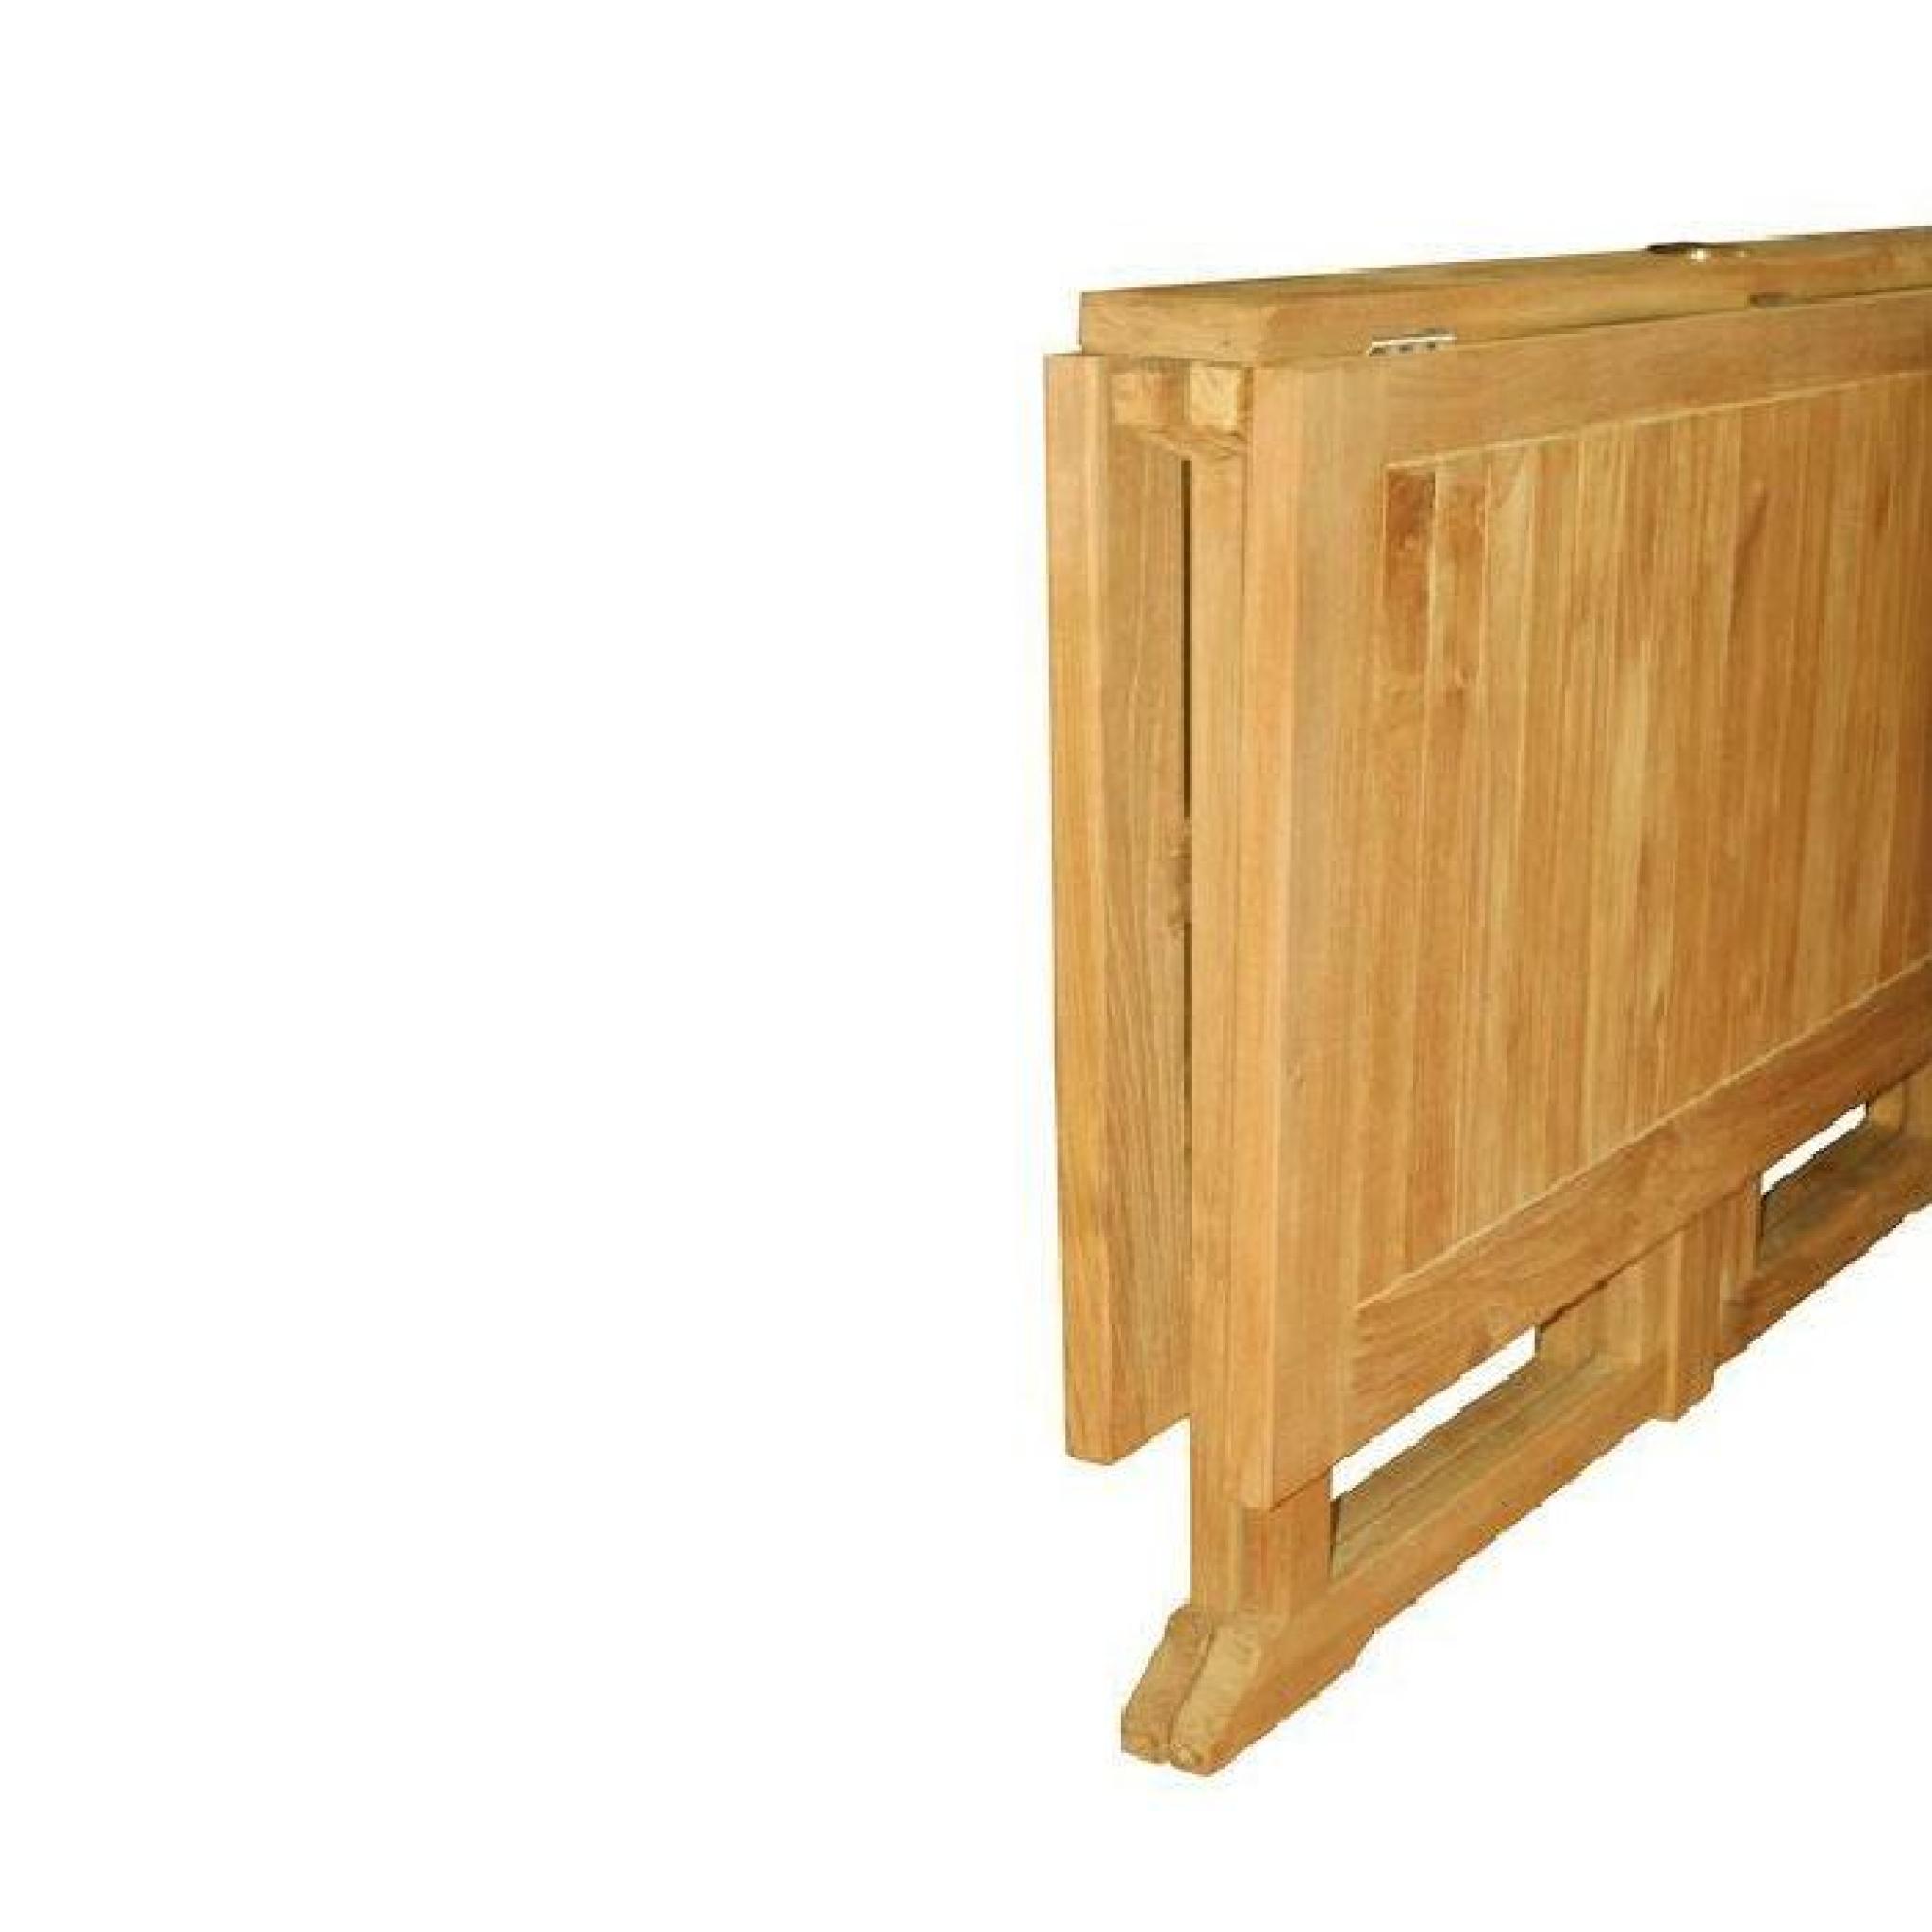 Table pliante carrée en teck Ecograde Goa 120 x 120 cm pas cher